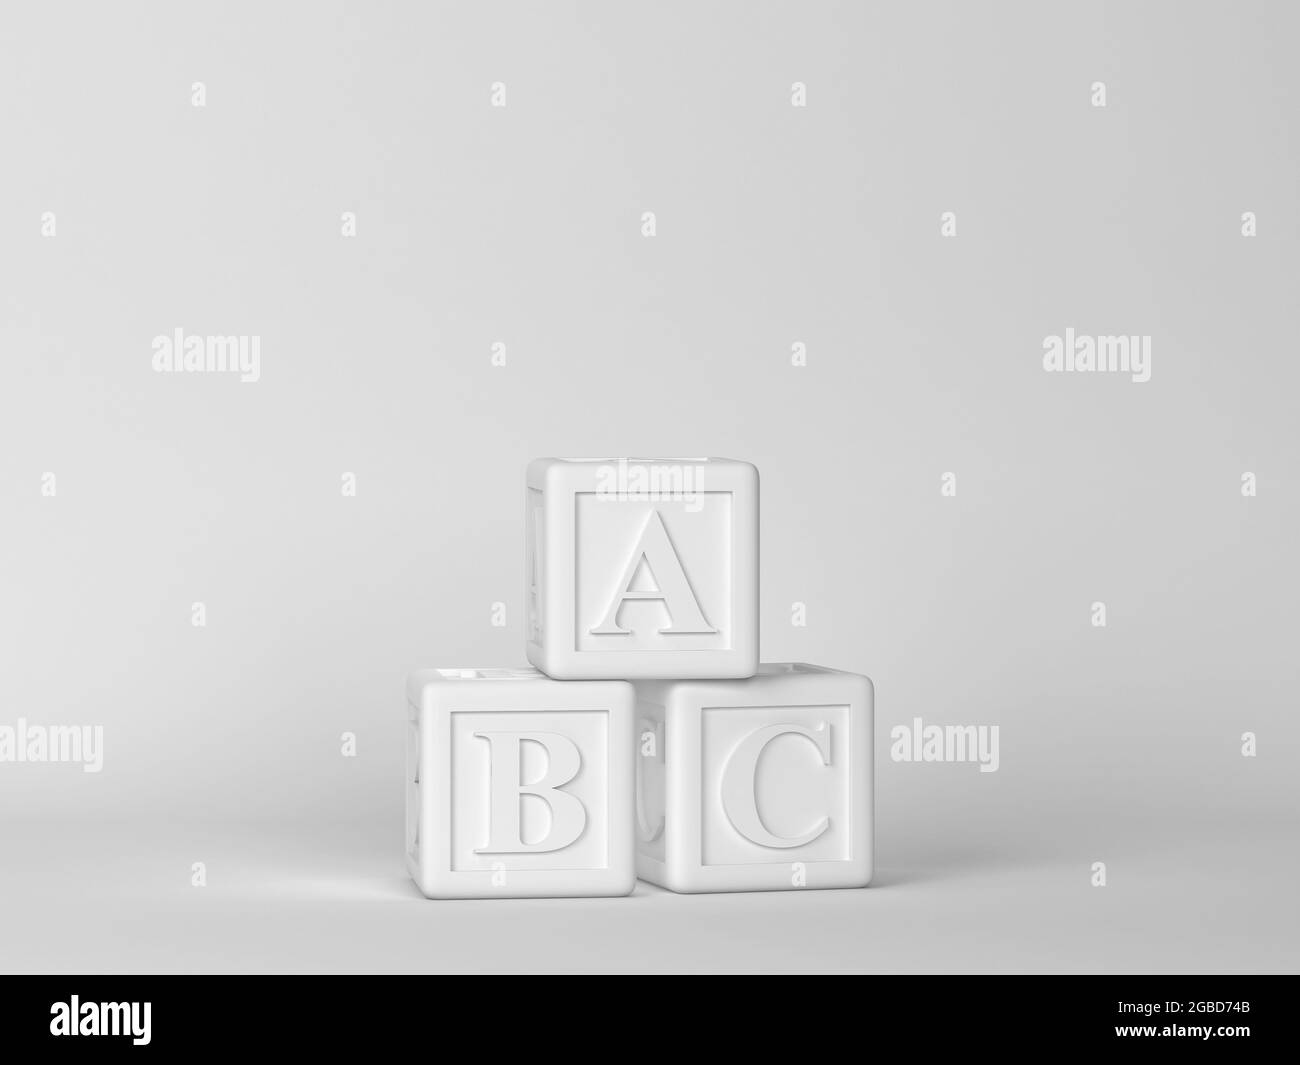 Blocs ABC. Scène minimale. illustration 3d Banque D'Images